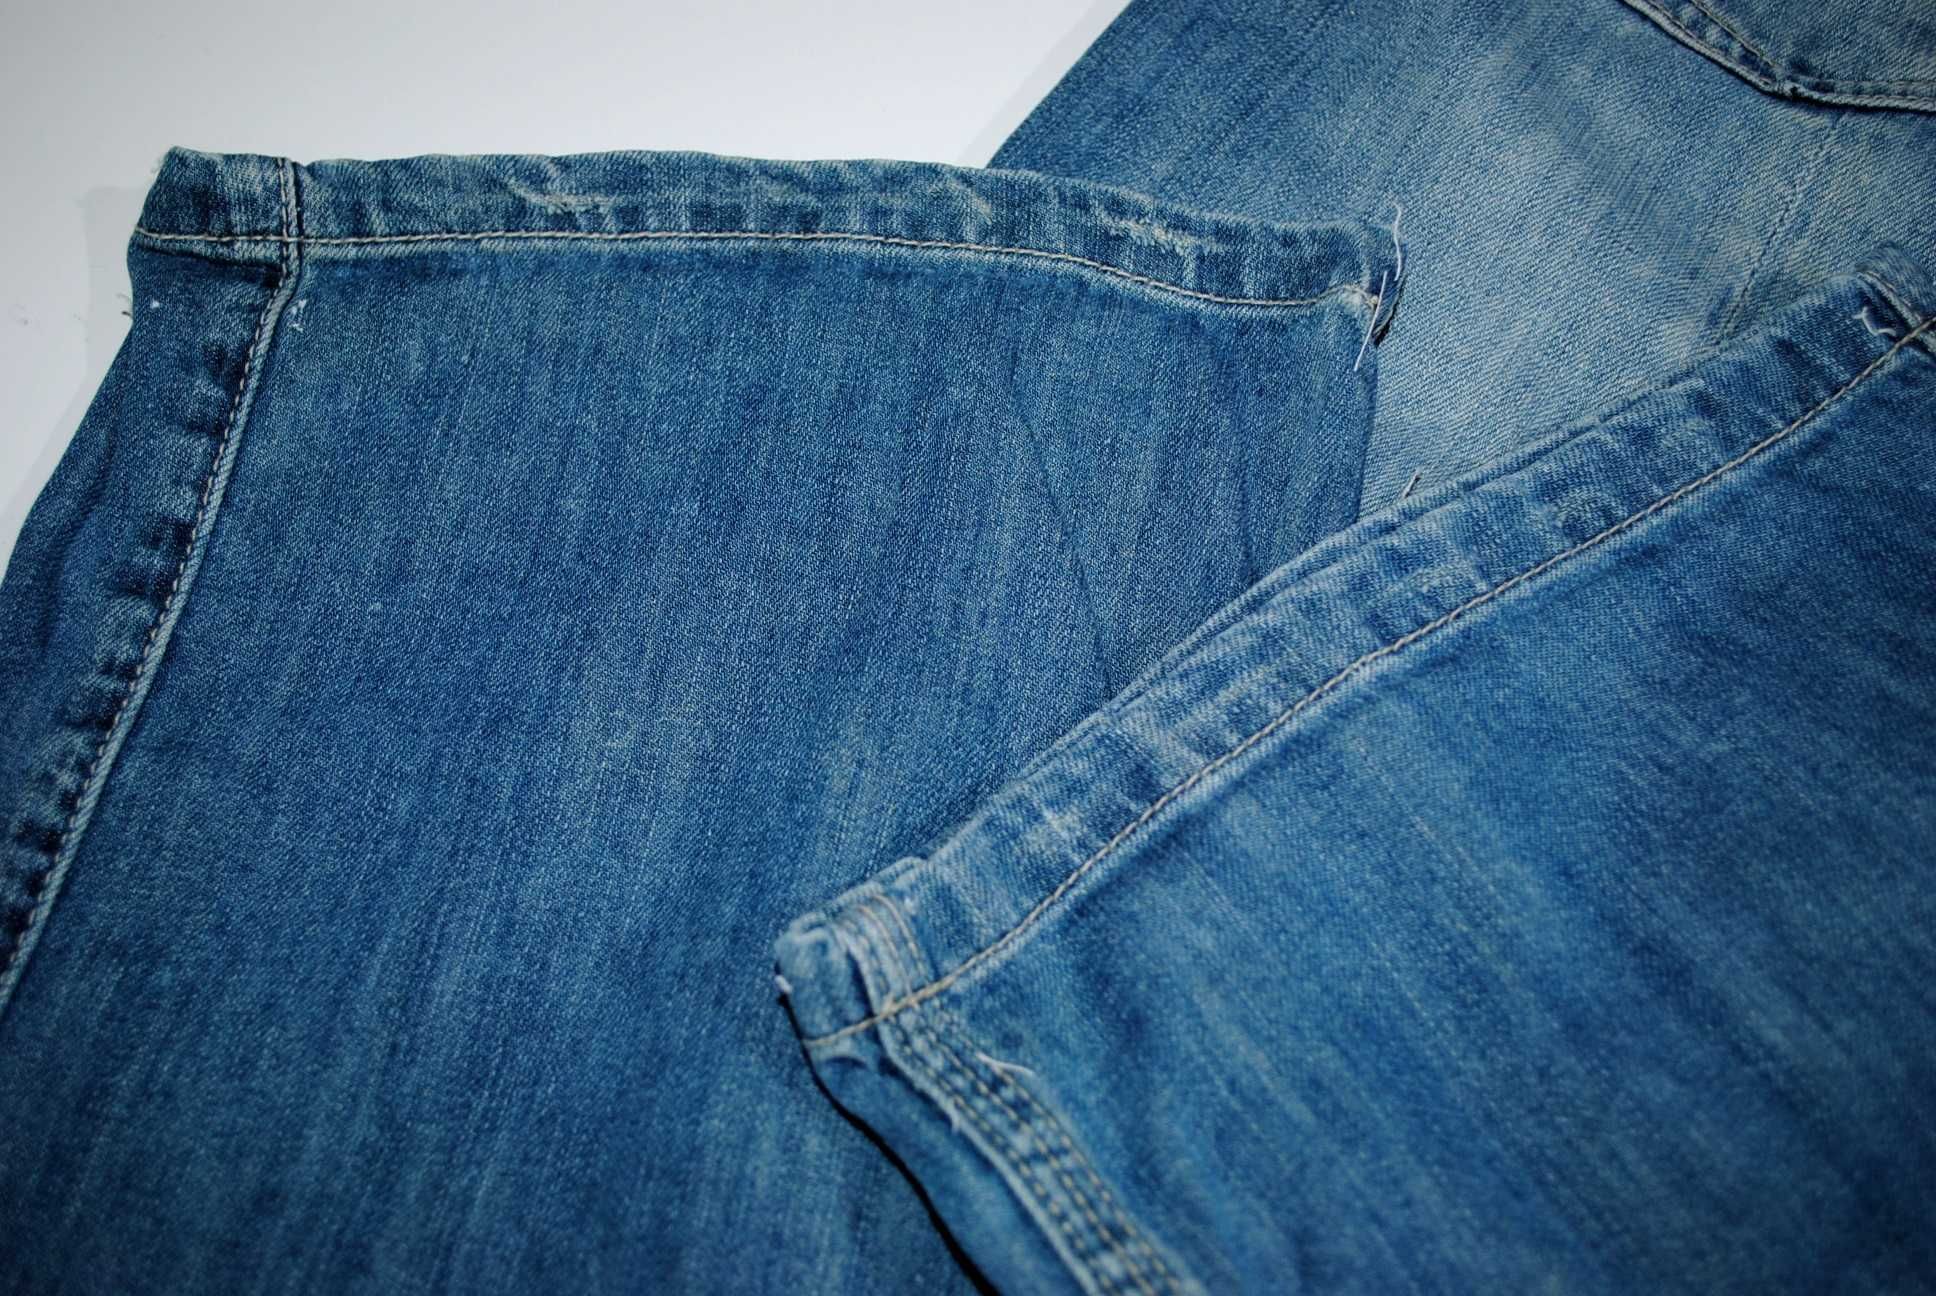 джинсы крутые синие Бельгия  BENCH S голубые бойфренды кюлоты